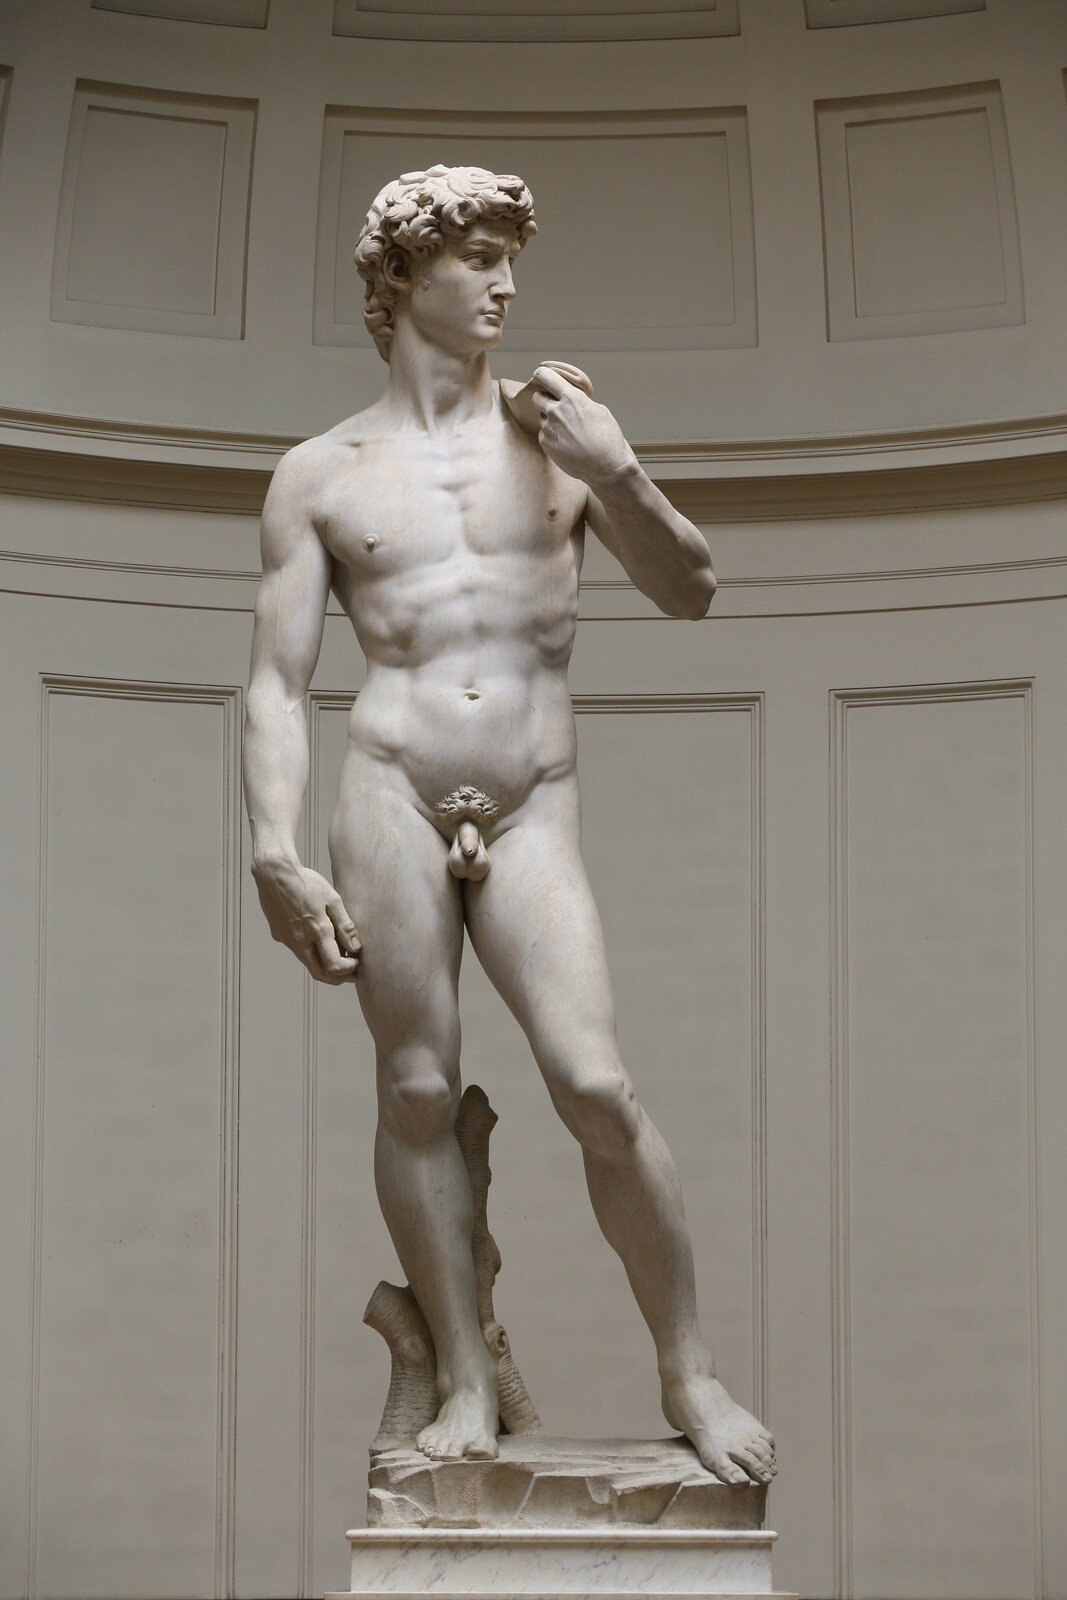 Ilustracja o kształcie pionowego prostokąta przedstawia rzeźbę Michała Anioła „Dawid”. Ukazuje posąg młodego, umięśnionego  mężczyzny w akcie, stojącego w kontrapoście. Dawid ma odsunięta lewą nogę, jego ciężar ciała spoczywa na nodze prawej. Prawa ręka jest swobodnie opuszczona, dłoń zgięta w nadgarstku. Lewa ręka zgięta w łokciu trzyma przerzuconą przez lewe ramię procę. Głowa skierowana jest w lewa stronę.   Lokowane włosy przysłaniają lekko kark i prawe  ucho.   Wzrok mężczyzny jest skupiony, a mimika twarzy nie zdradza uczuć, jest poważna. Z tyłu za jego prawą nogą widać kawałek pnia drzewa. Posąg ustawiony jest na postumencie. W tle widoczna jest ściana z kasetonami. 